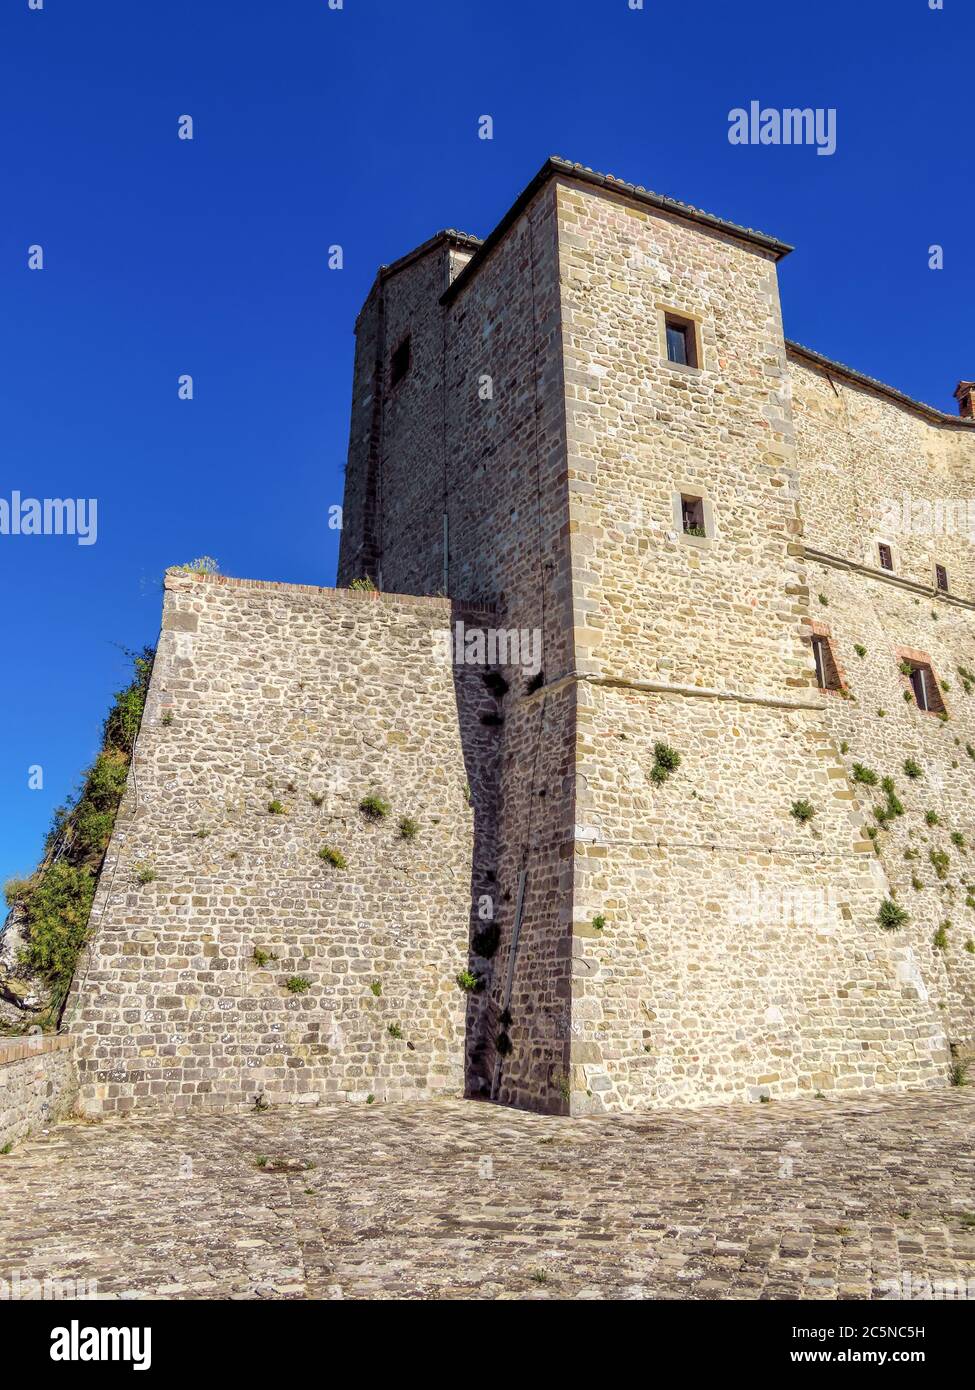 Die Renaissance-Festung von San Leo, auf einem felsigen Felsen gelegen, stammt aus dem fünfzehnten Jahrhundert Stockfoto